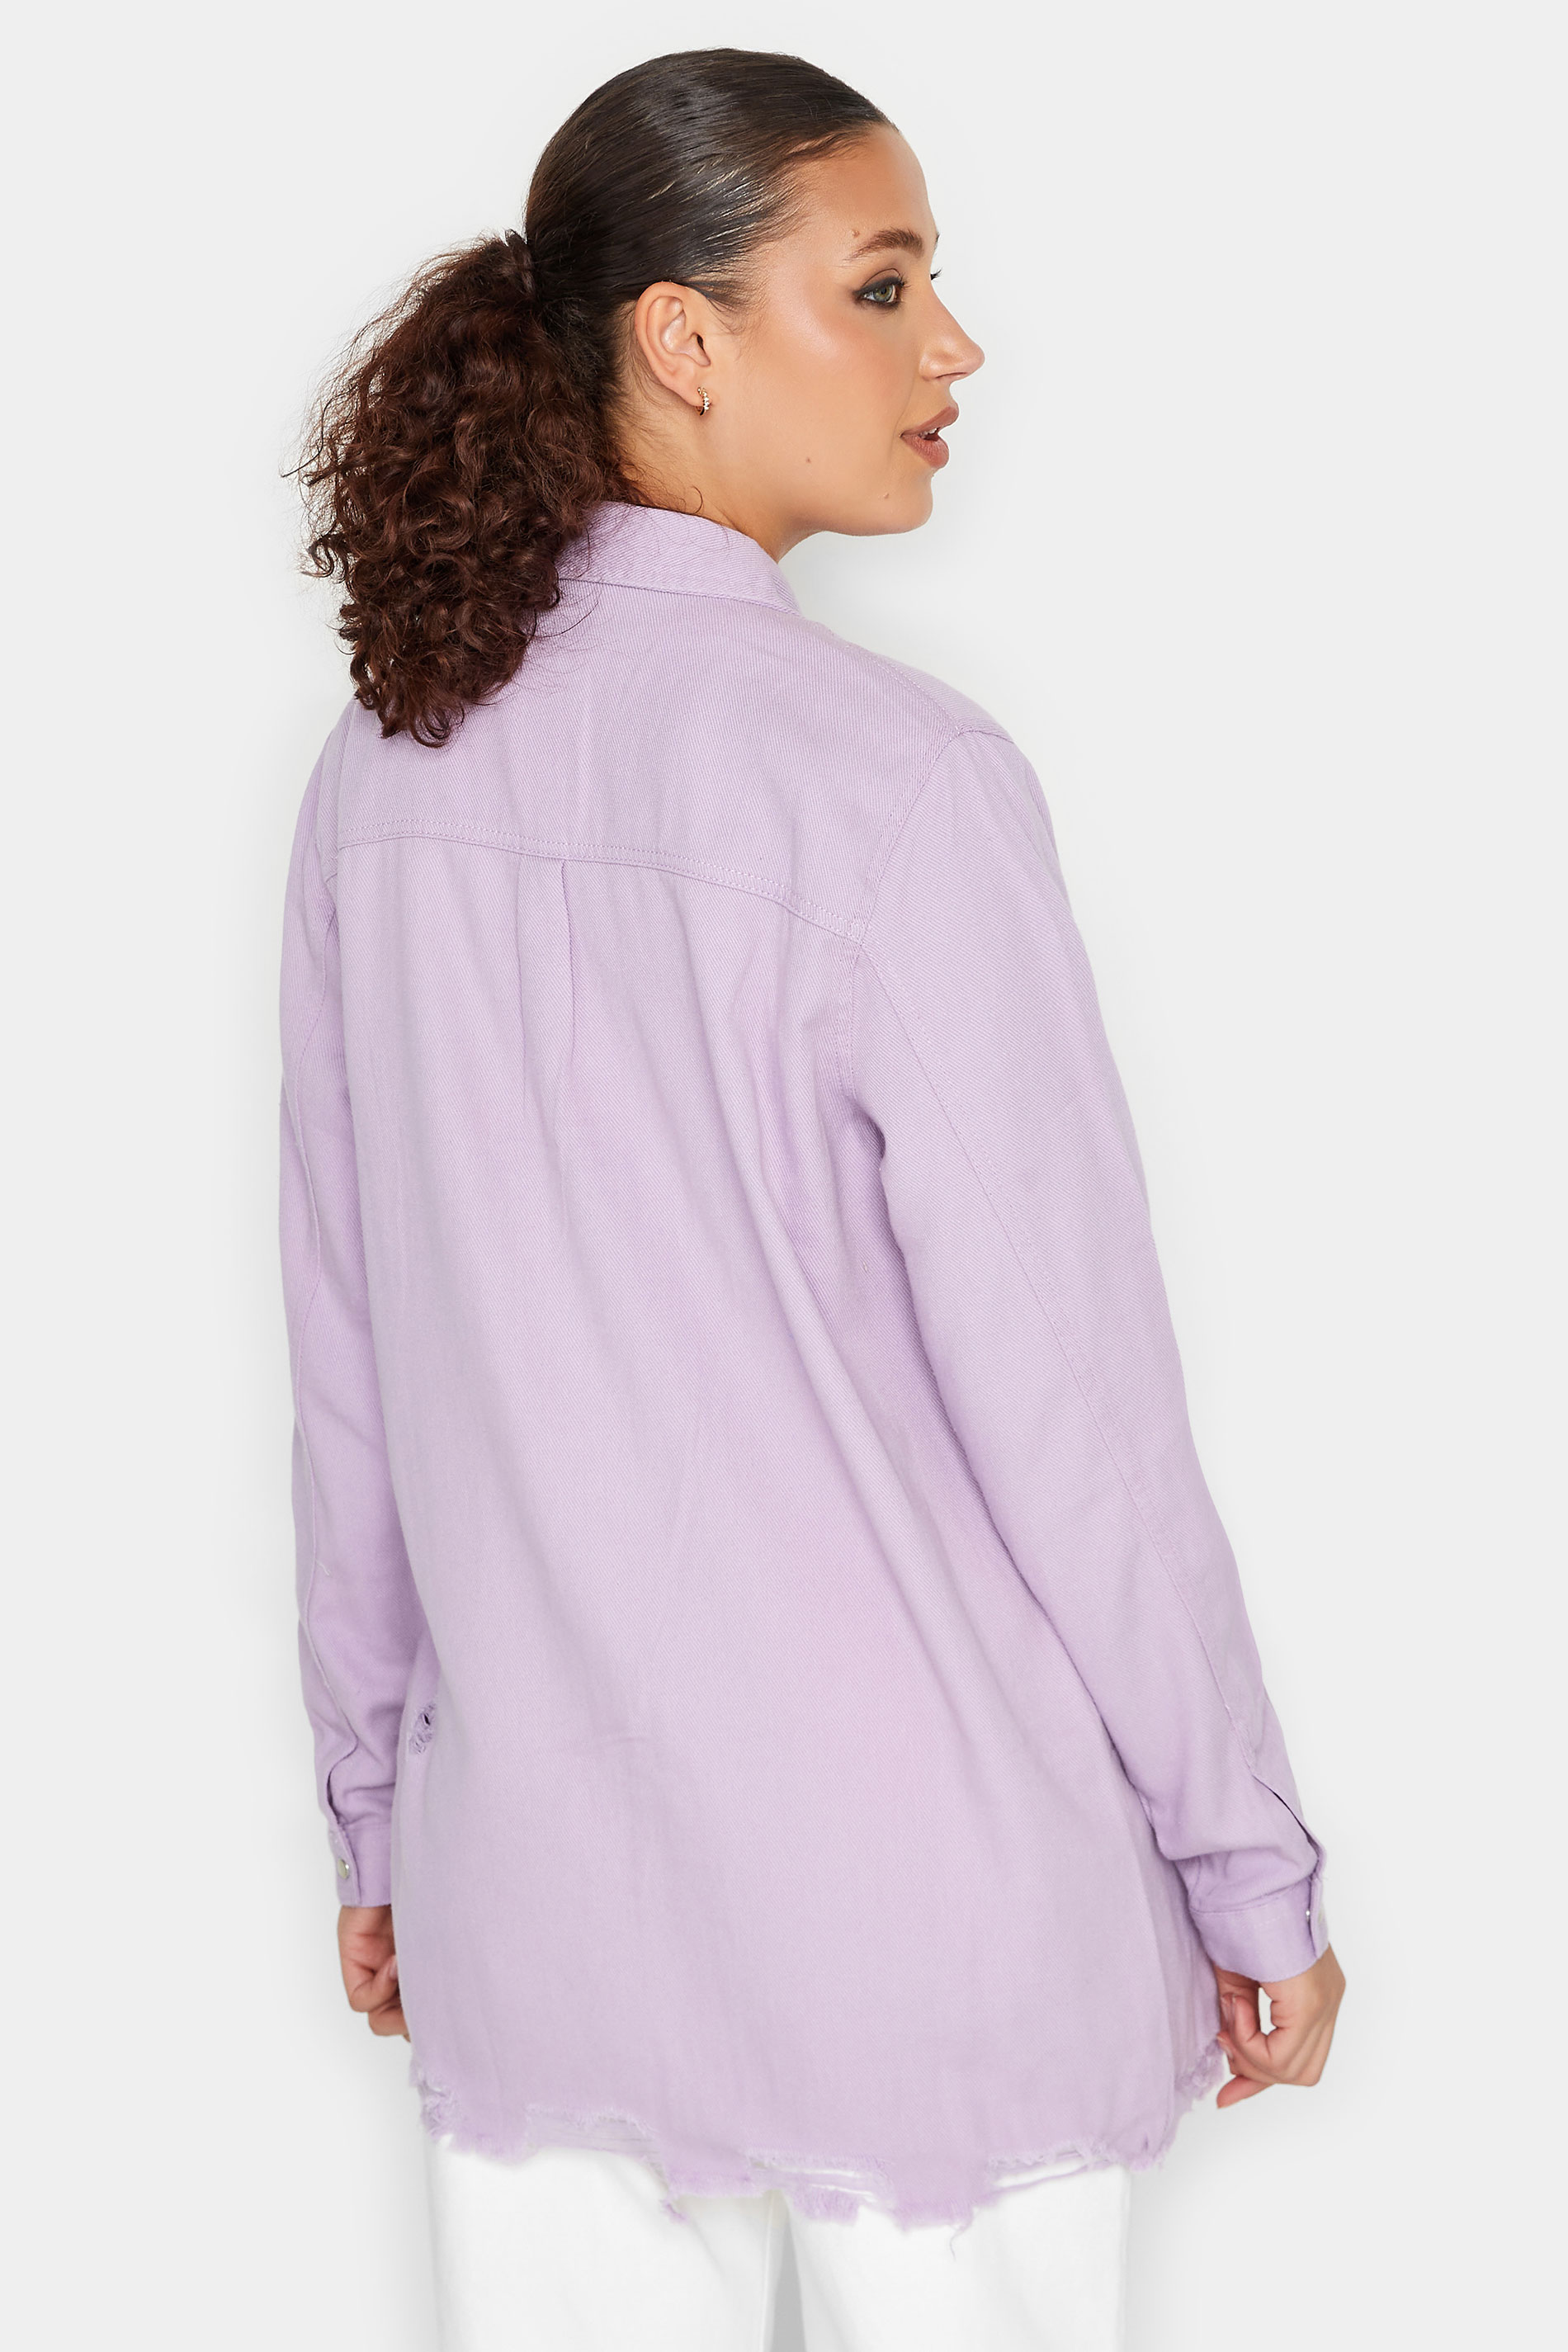 LTS Tall Women's Lilac Purple Distressed Twill Shirt | Long Tall Sally 3